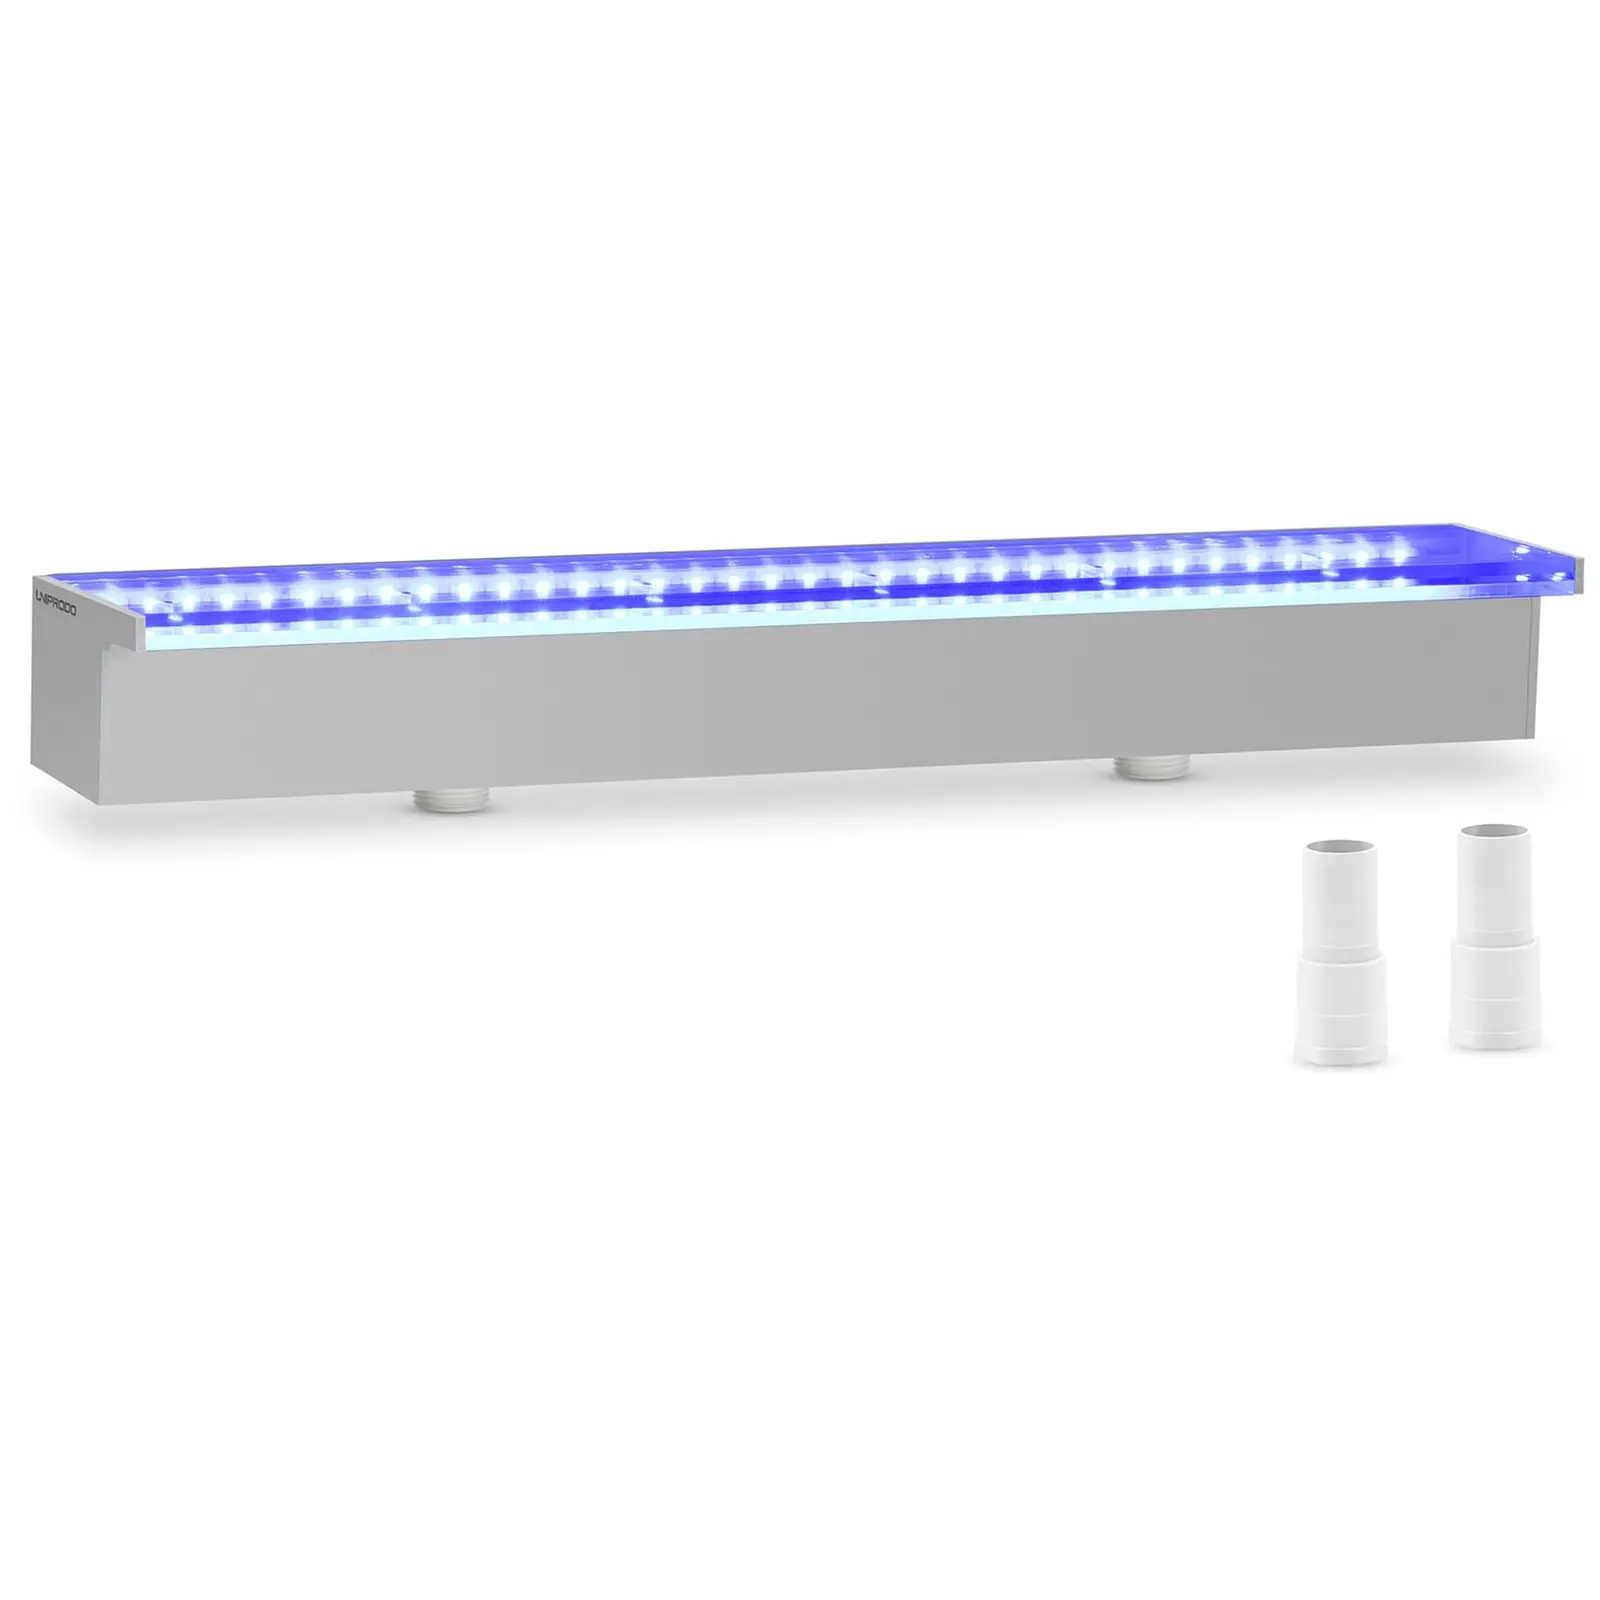 Medence szökőkút - 60 cm - LED világítás - kék/fehér - 30 mm-es vízkivezető nyílás